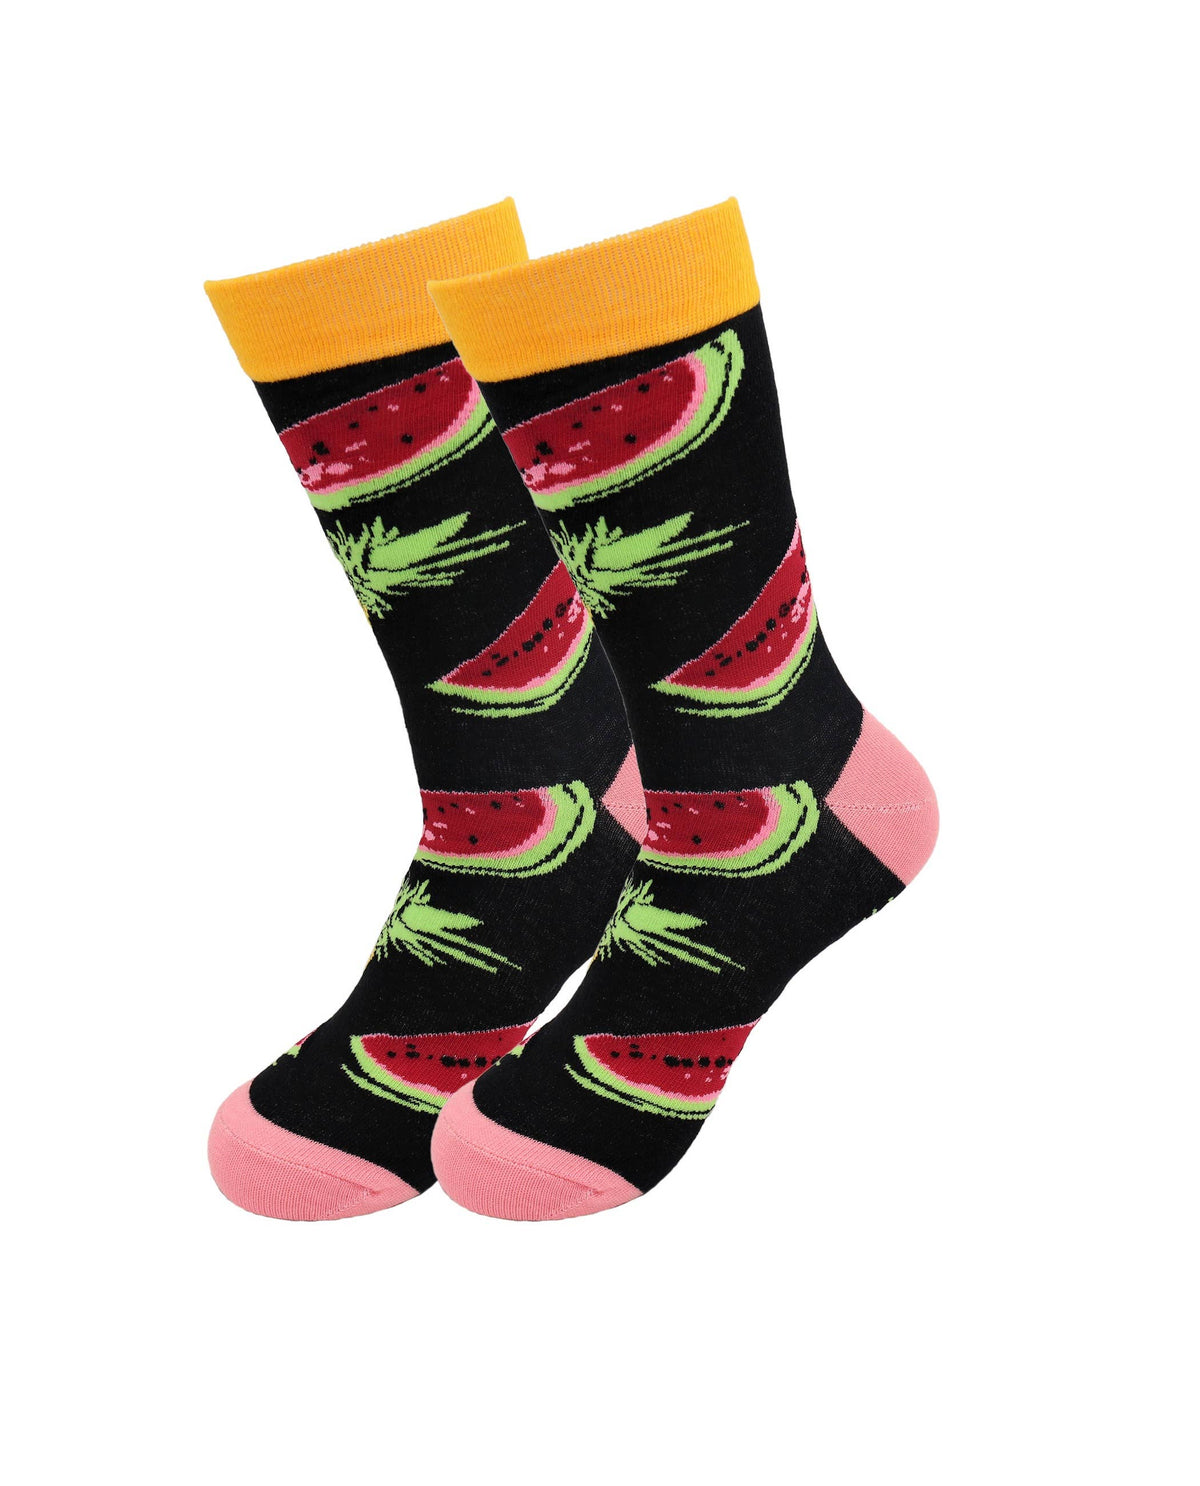 Fruits Socks - Apple, Orange, Cherries, Kiwi Cotton Socks